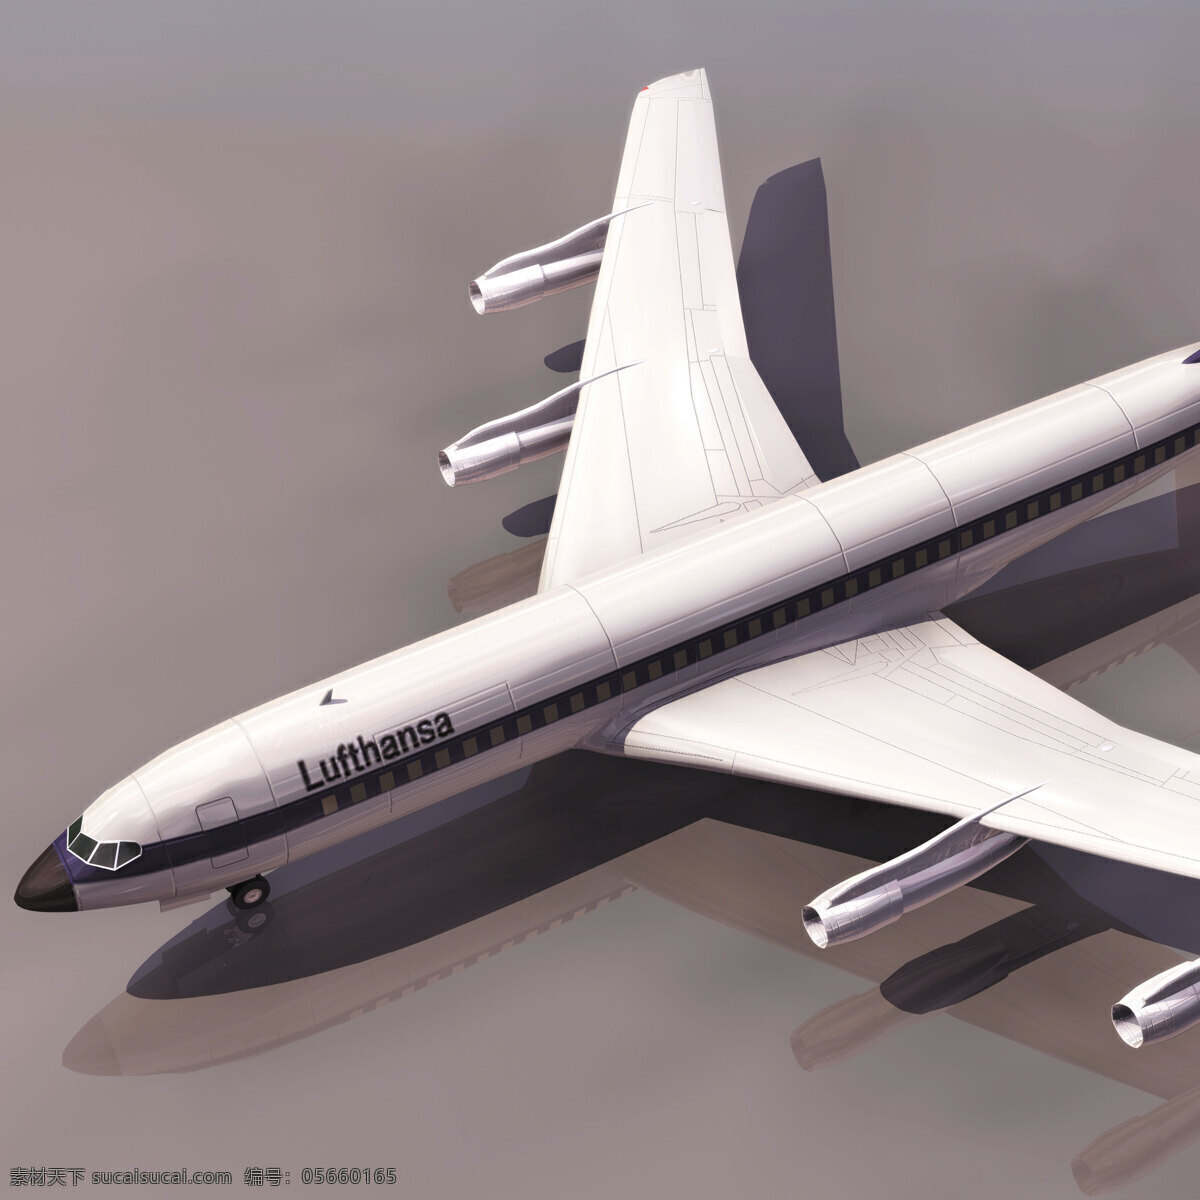 飞机模型03 boein 707 飞机模型 boein707 民用飞机 3d模型素材 电器模型